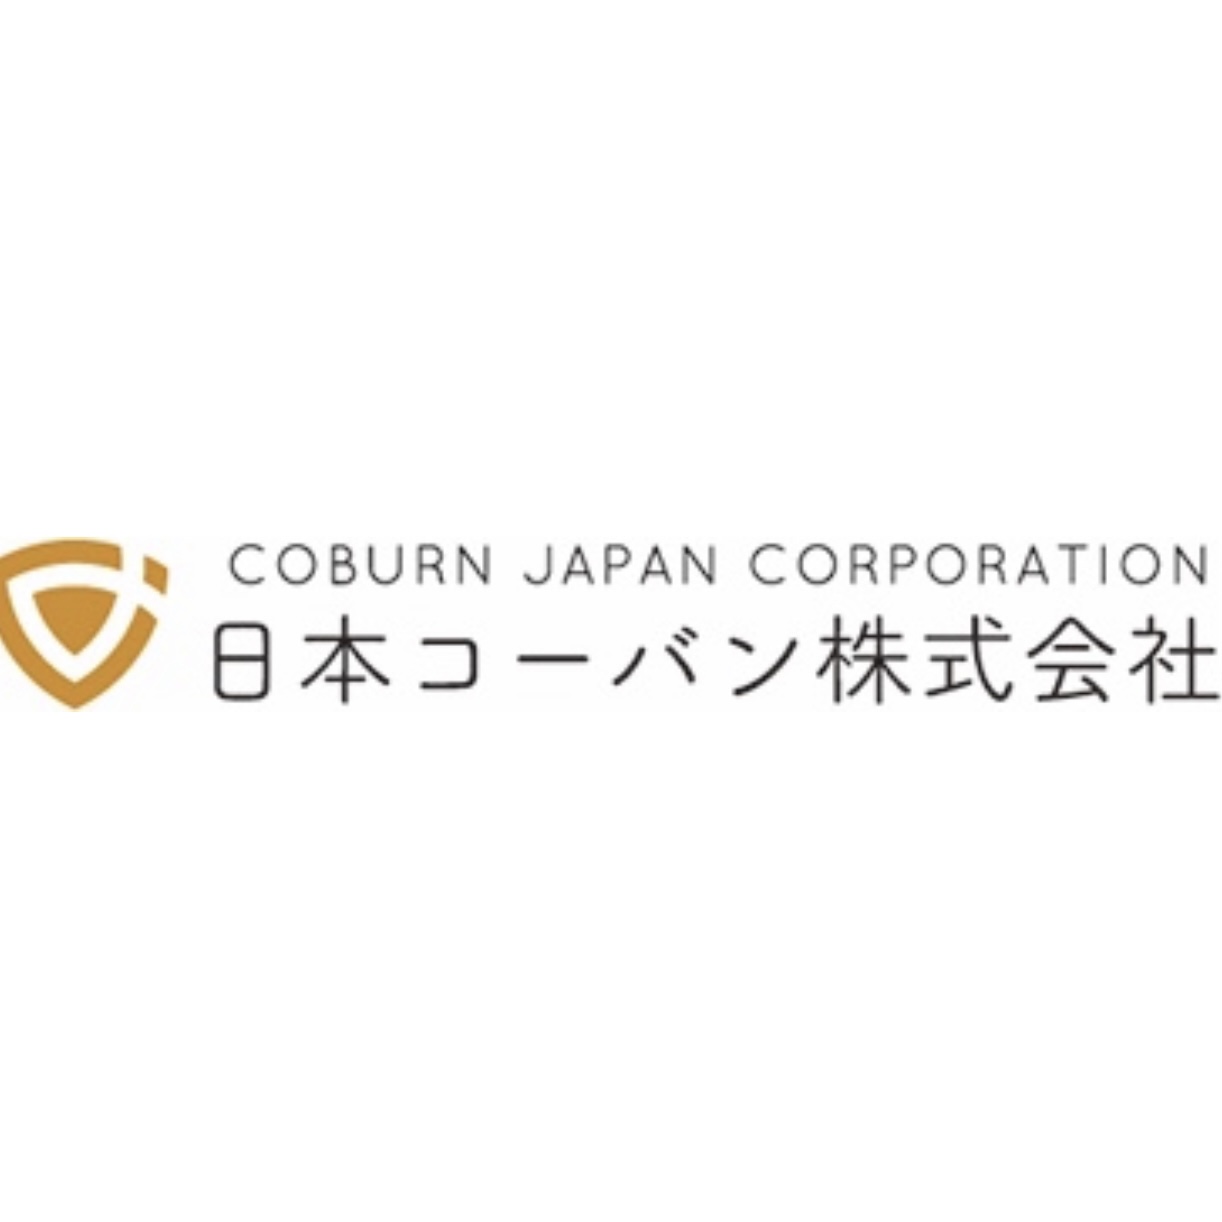 Coburn Japan